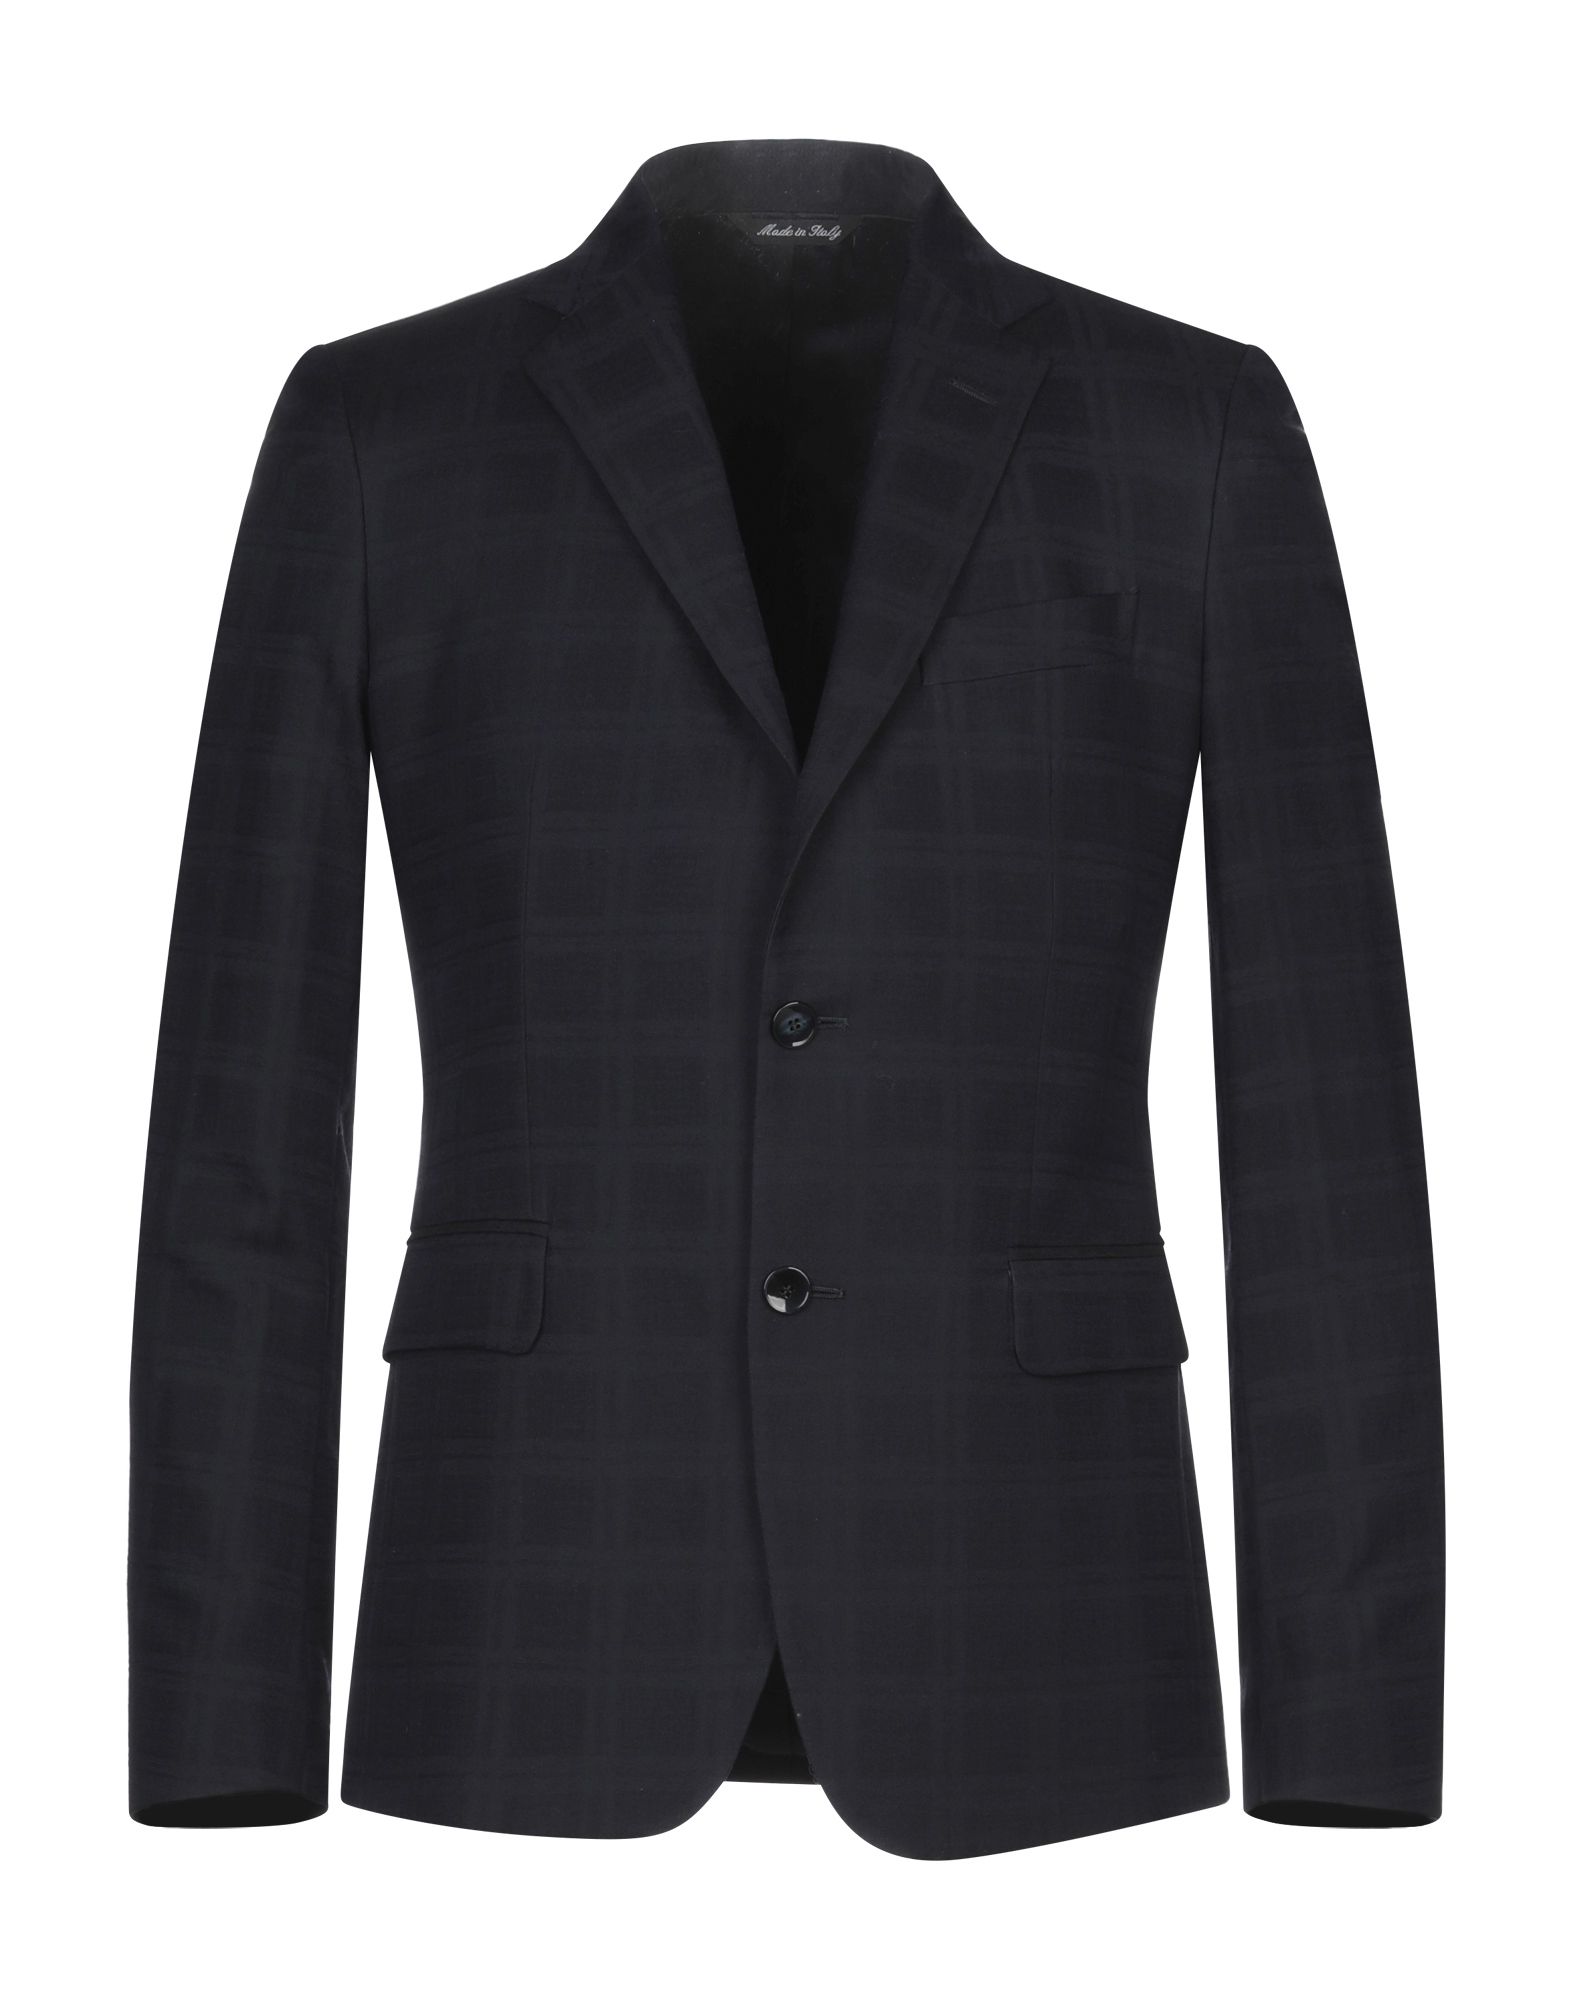 BRIAN DALES Suit jackets - Item 49570683